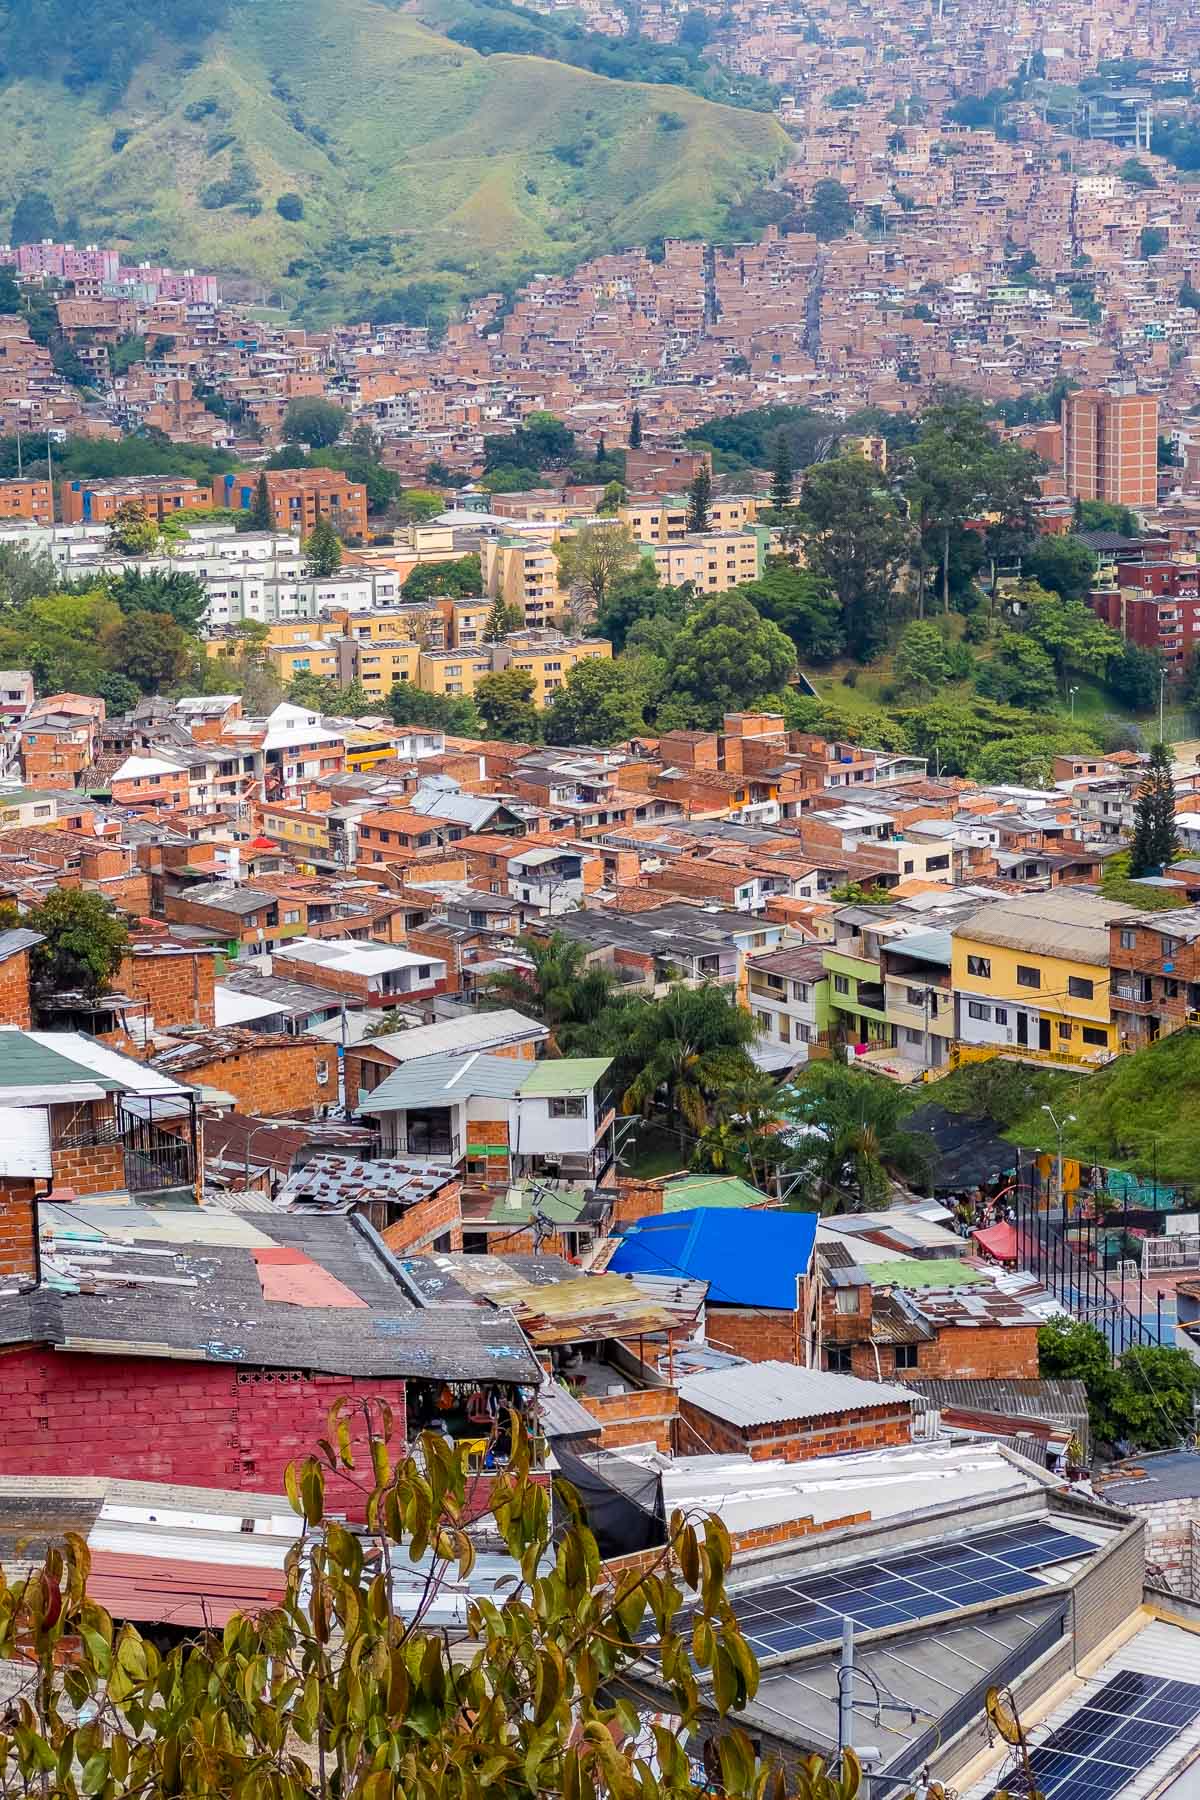 Small houses in Comuna 13, Medellin